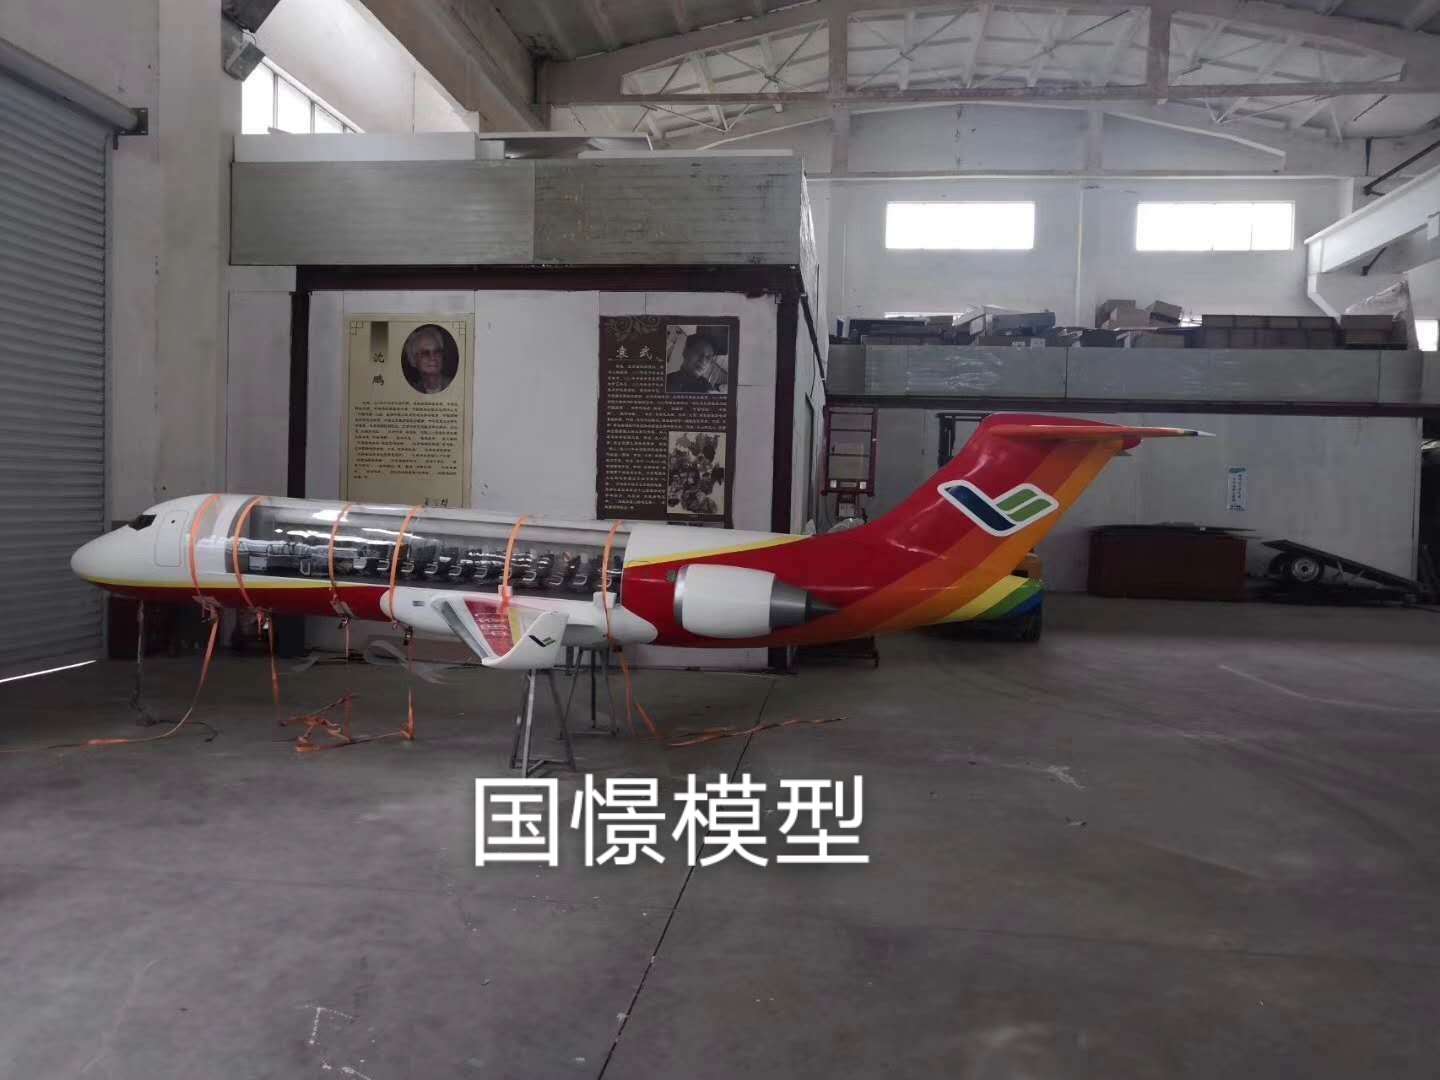 夏县飞机模型